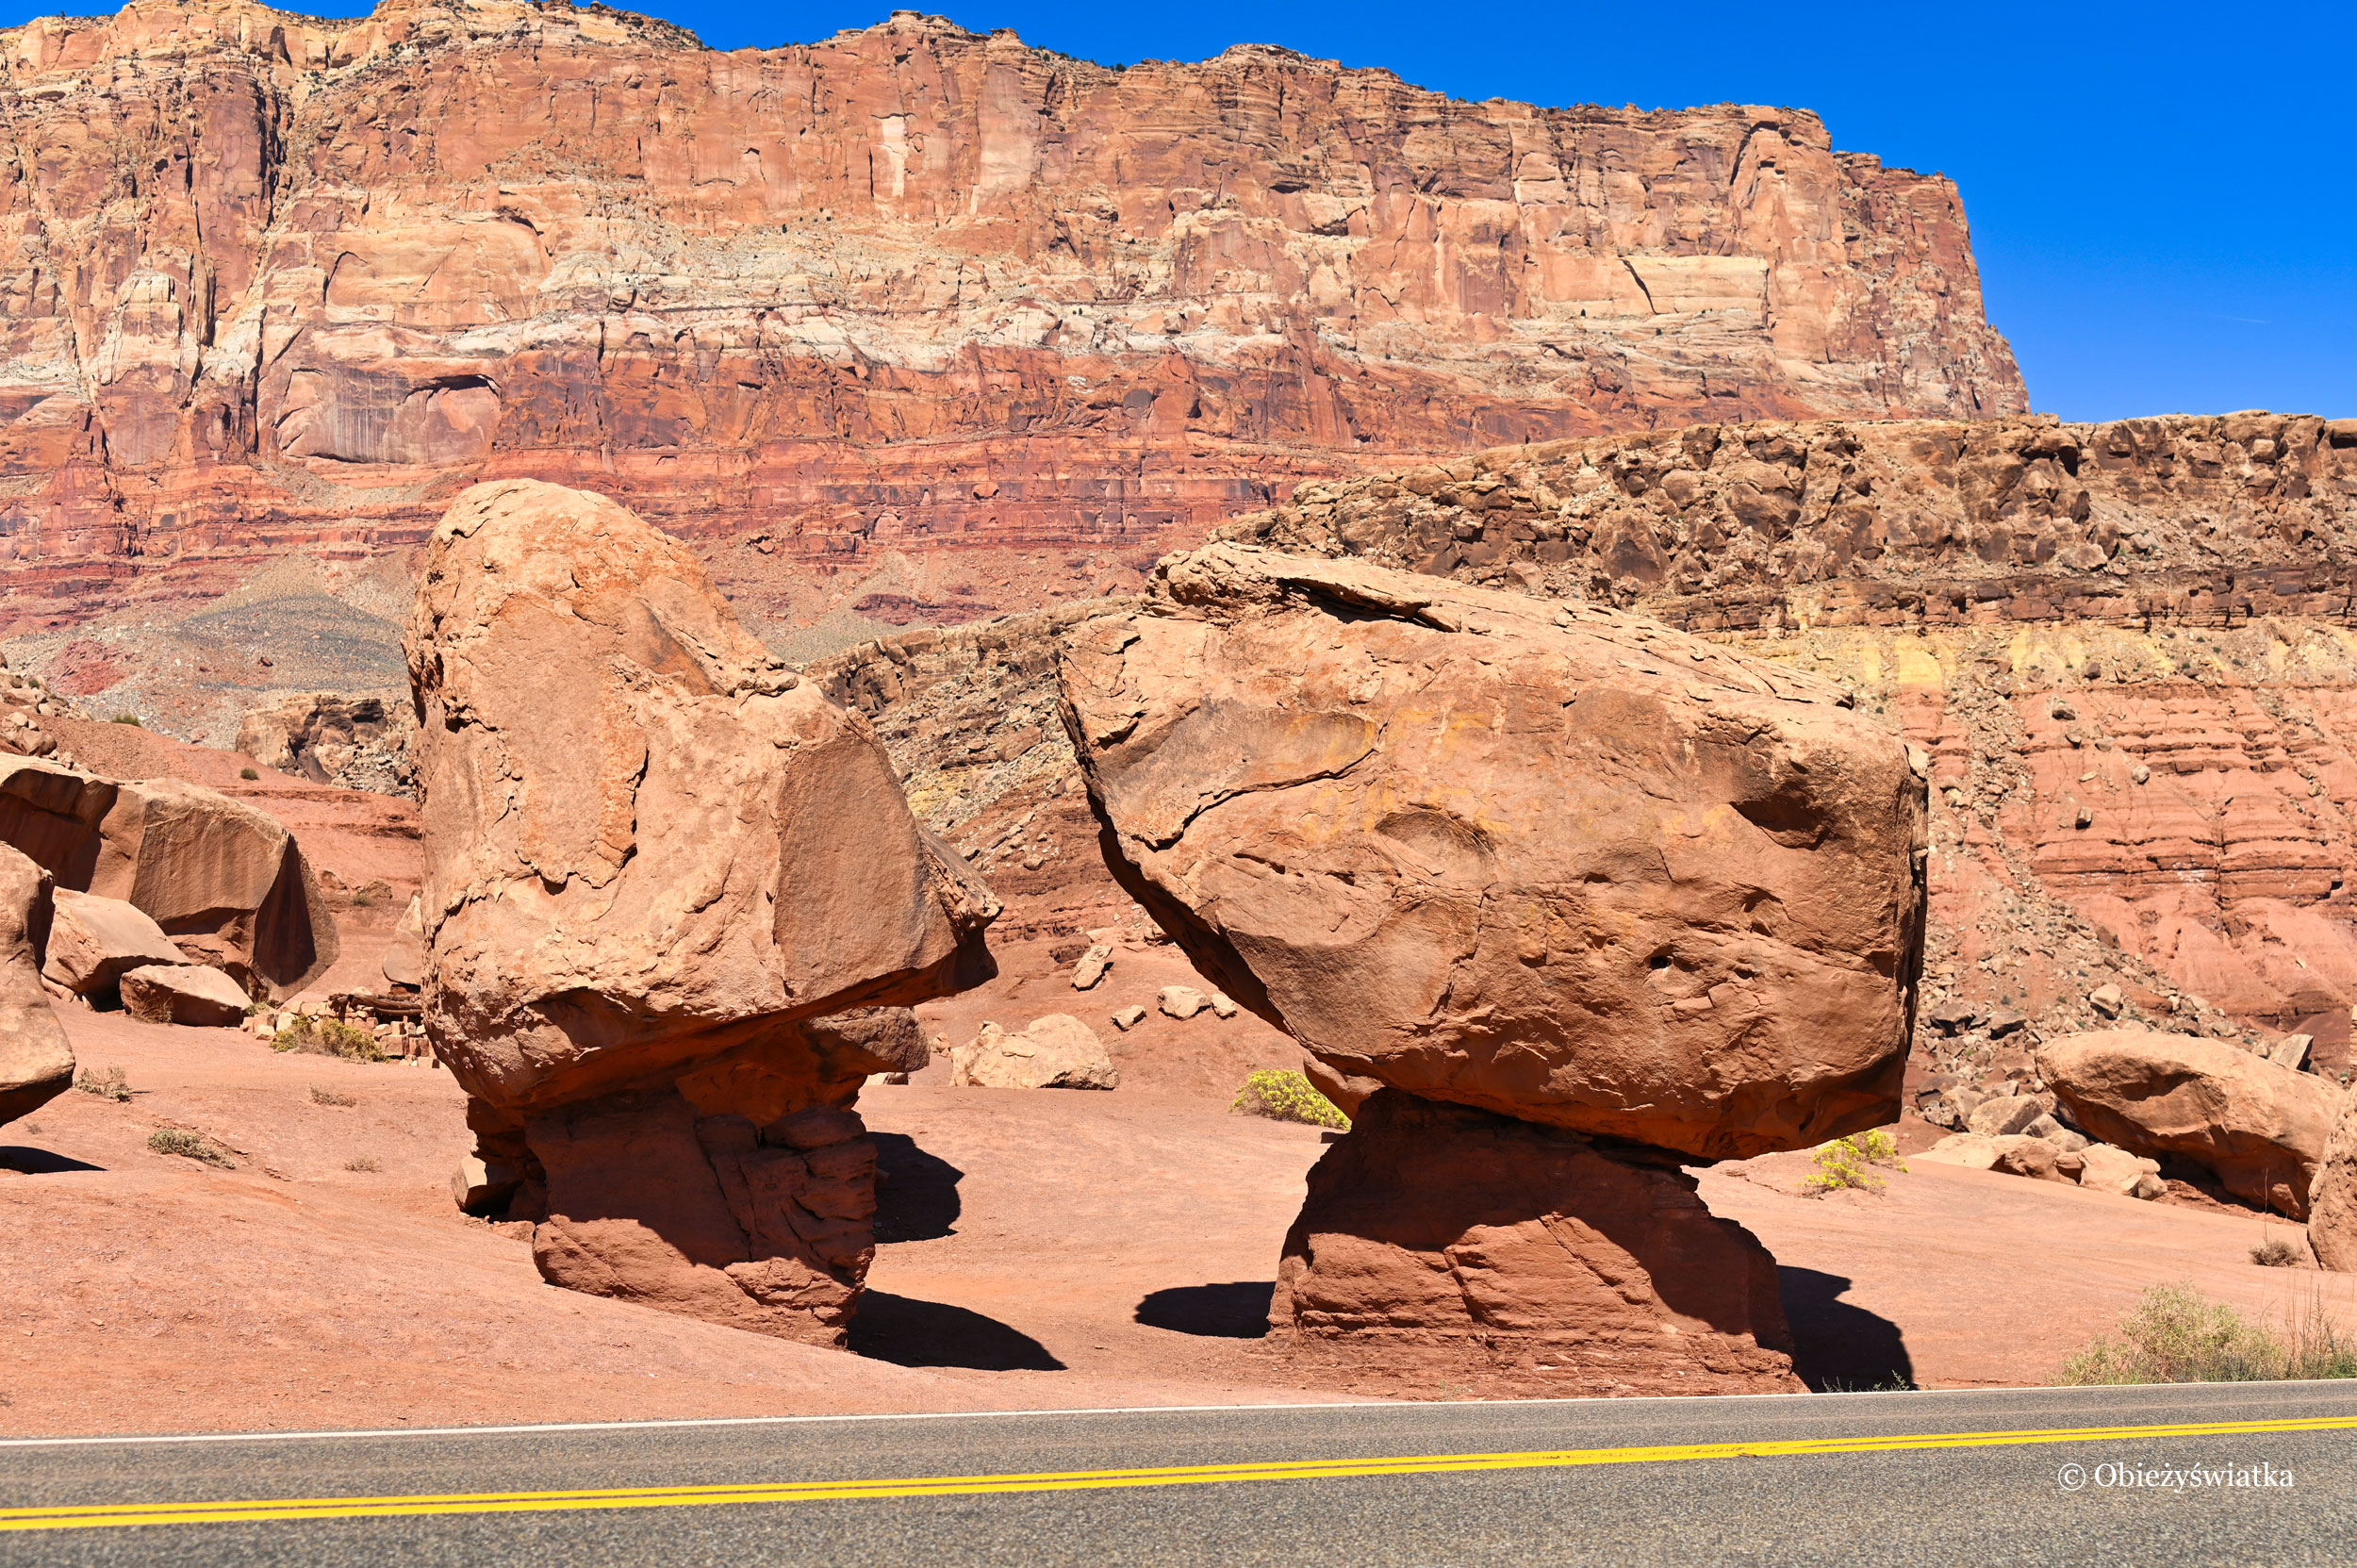 Ogromne kamienie na poboczu - Highway 89A, Arizona